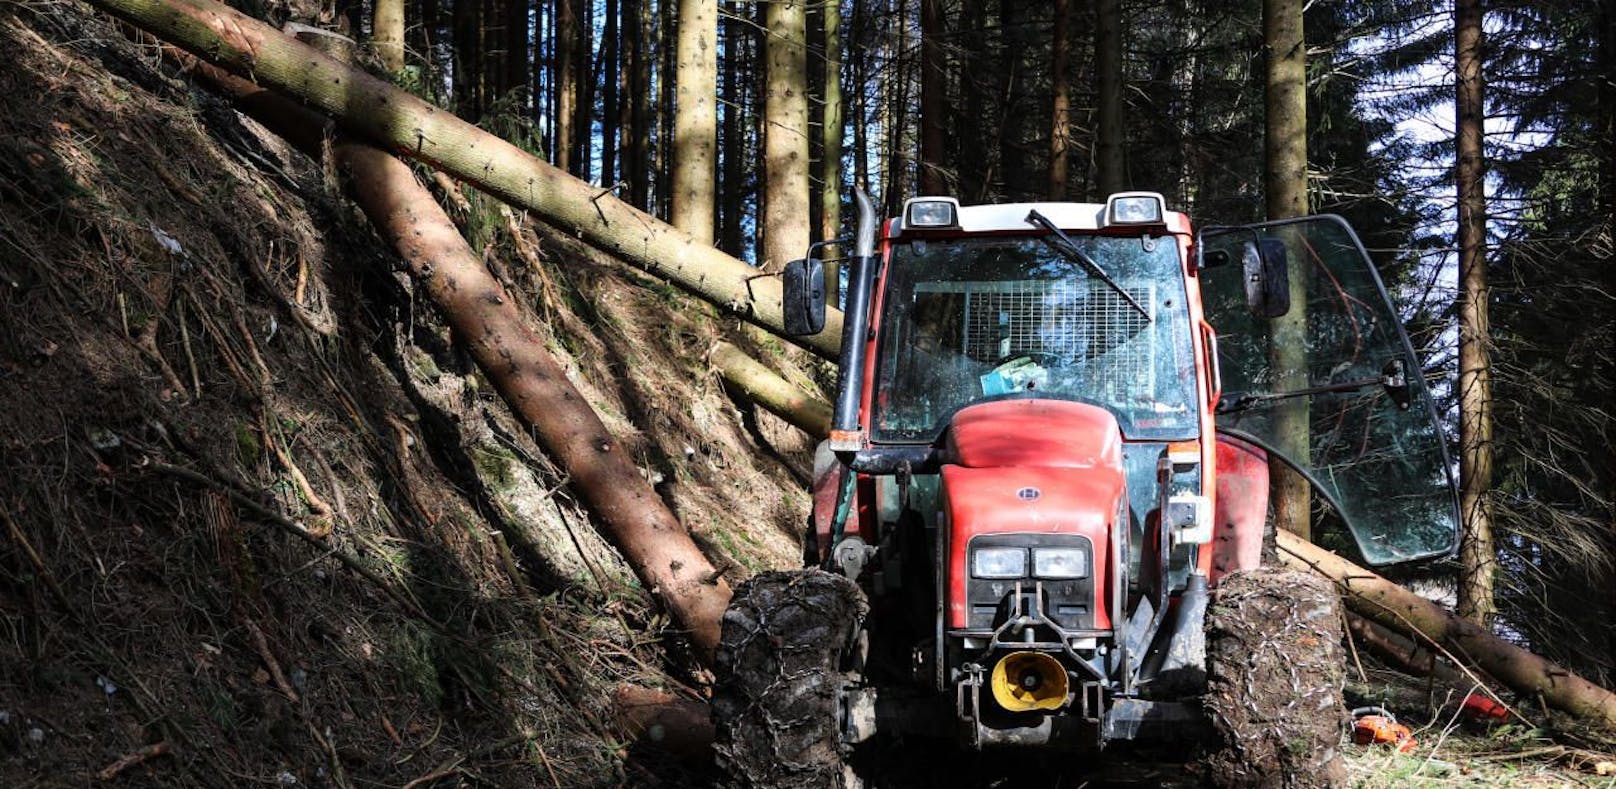 Traktor-Lenker fast von Baumstamm geköpft